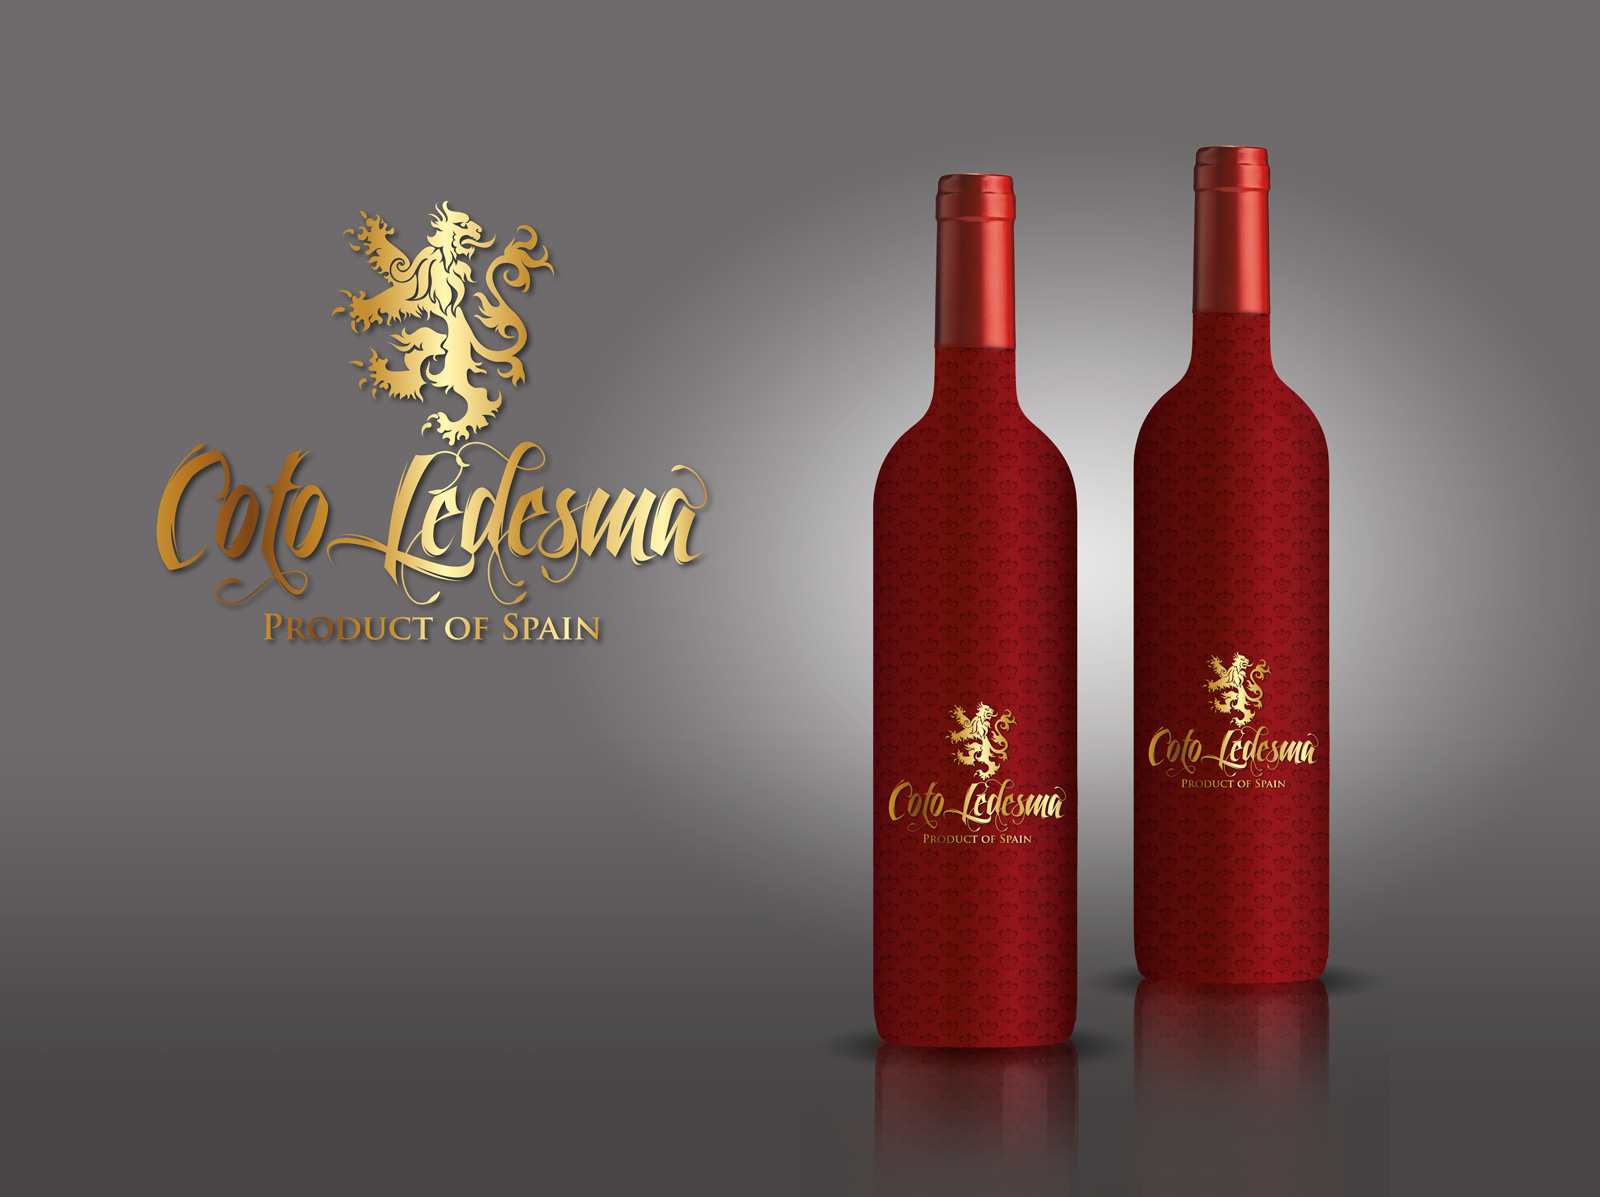 Diseño gráfico y creativo de etiquetas y packaging de vino para COTO LEDESMA para mercado chino